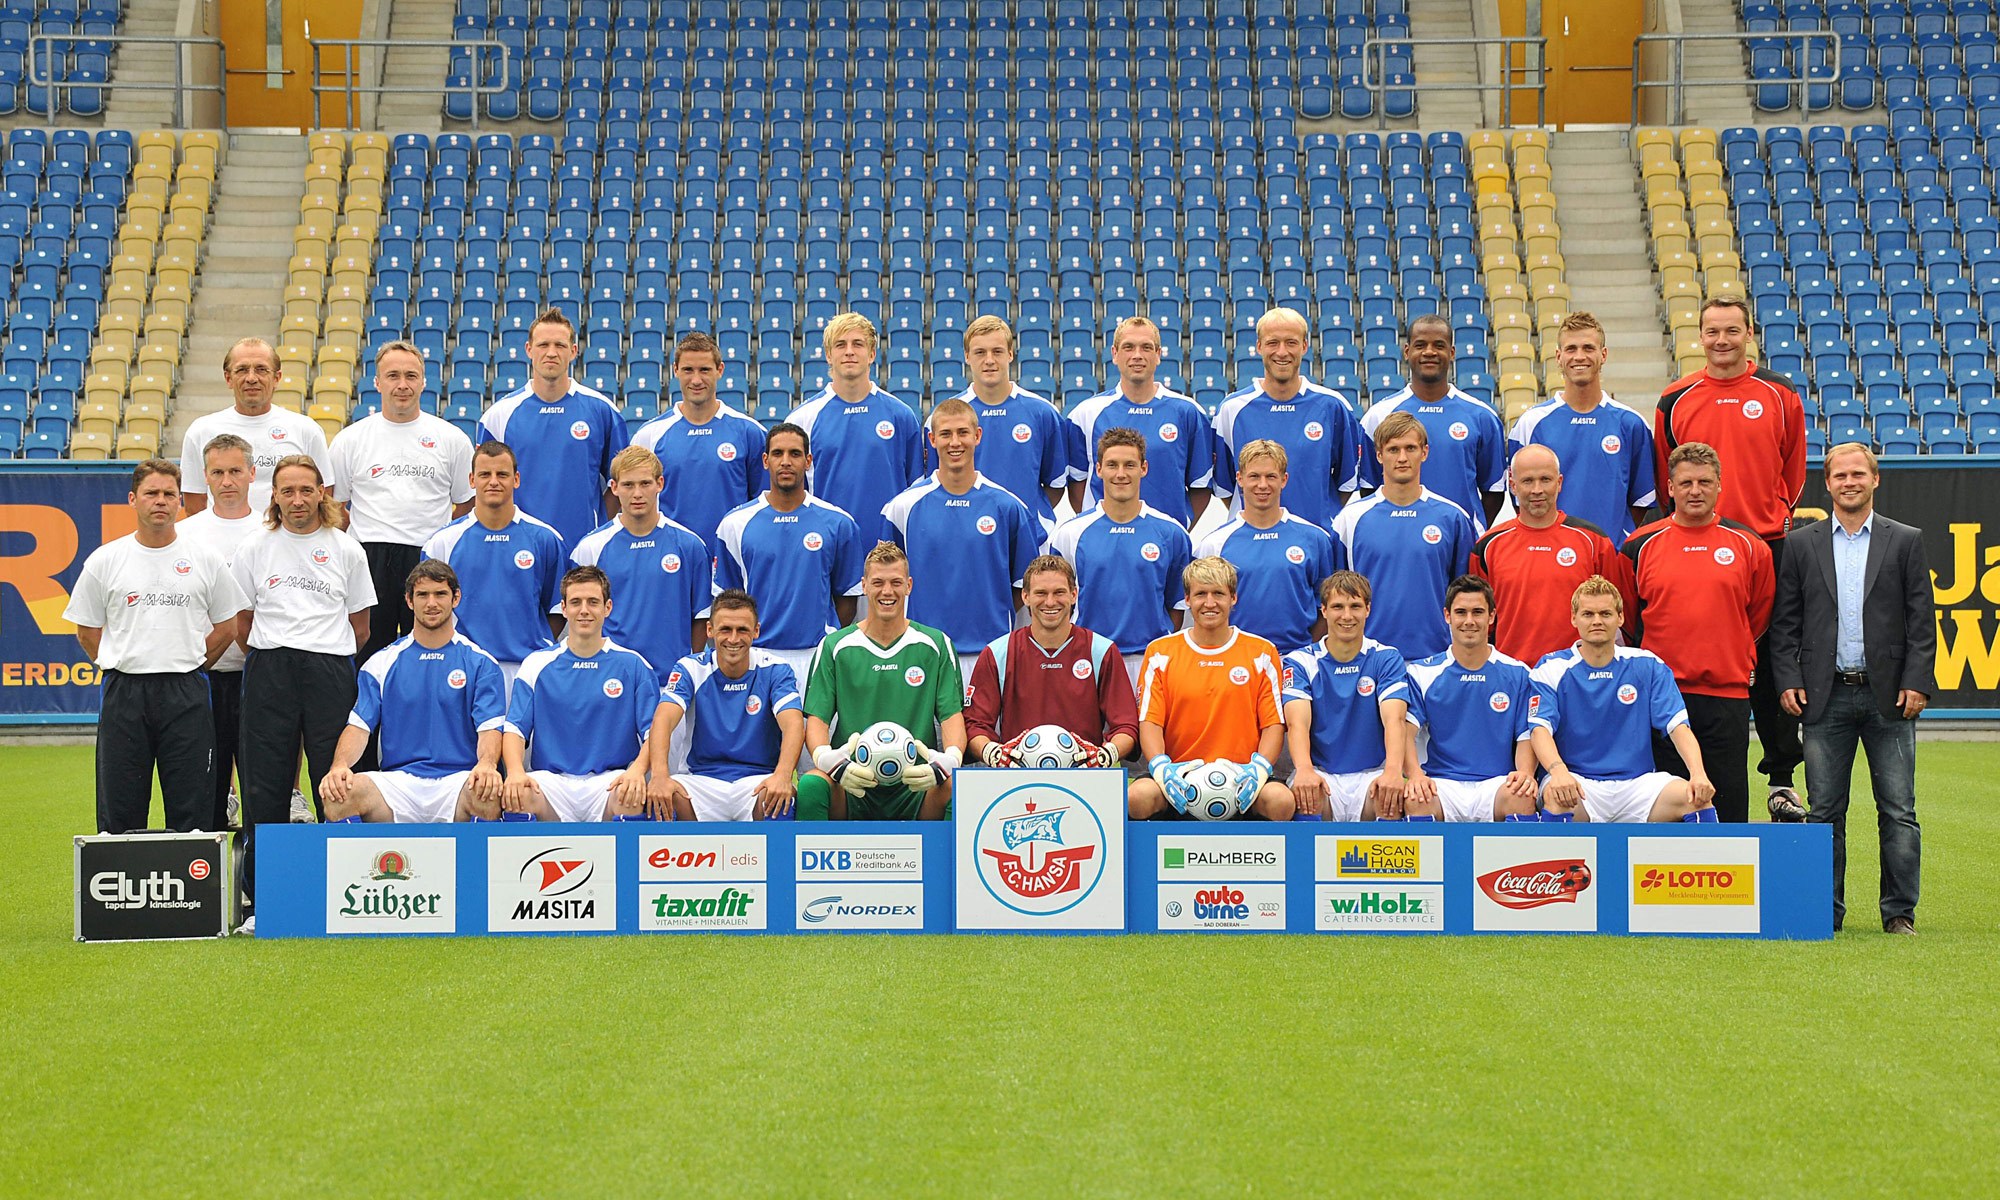 Mannschaftsfoto des FC Hansa Rostock 2009/2010 ohne Sponsor